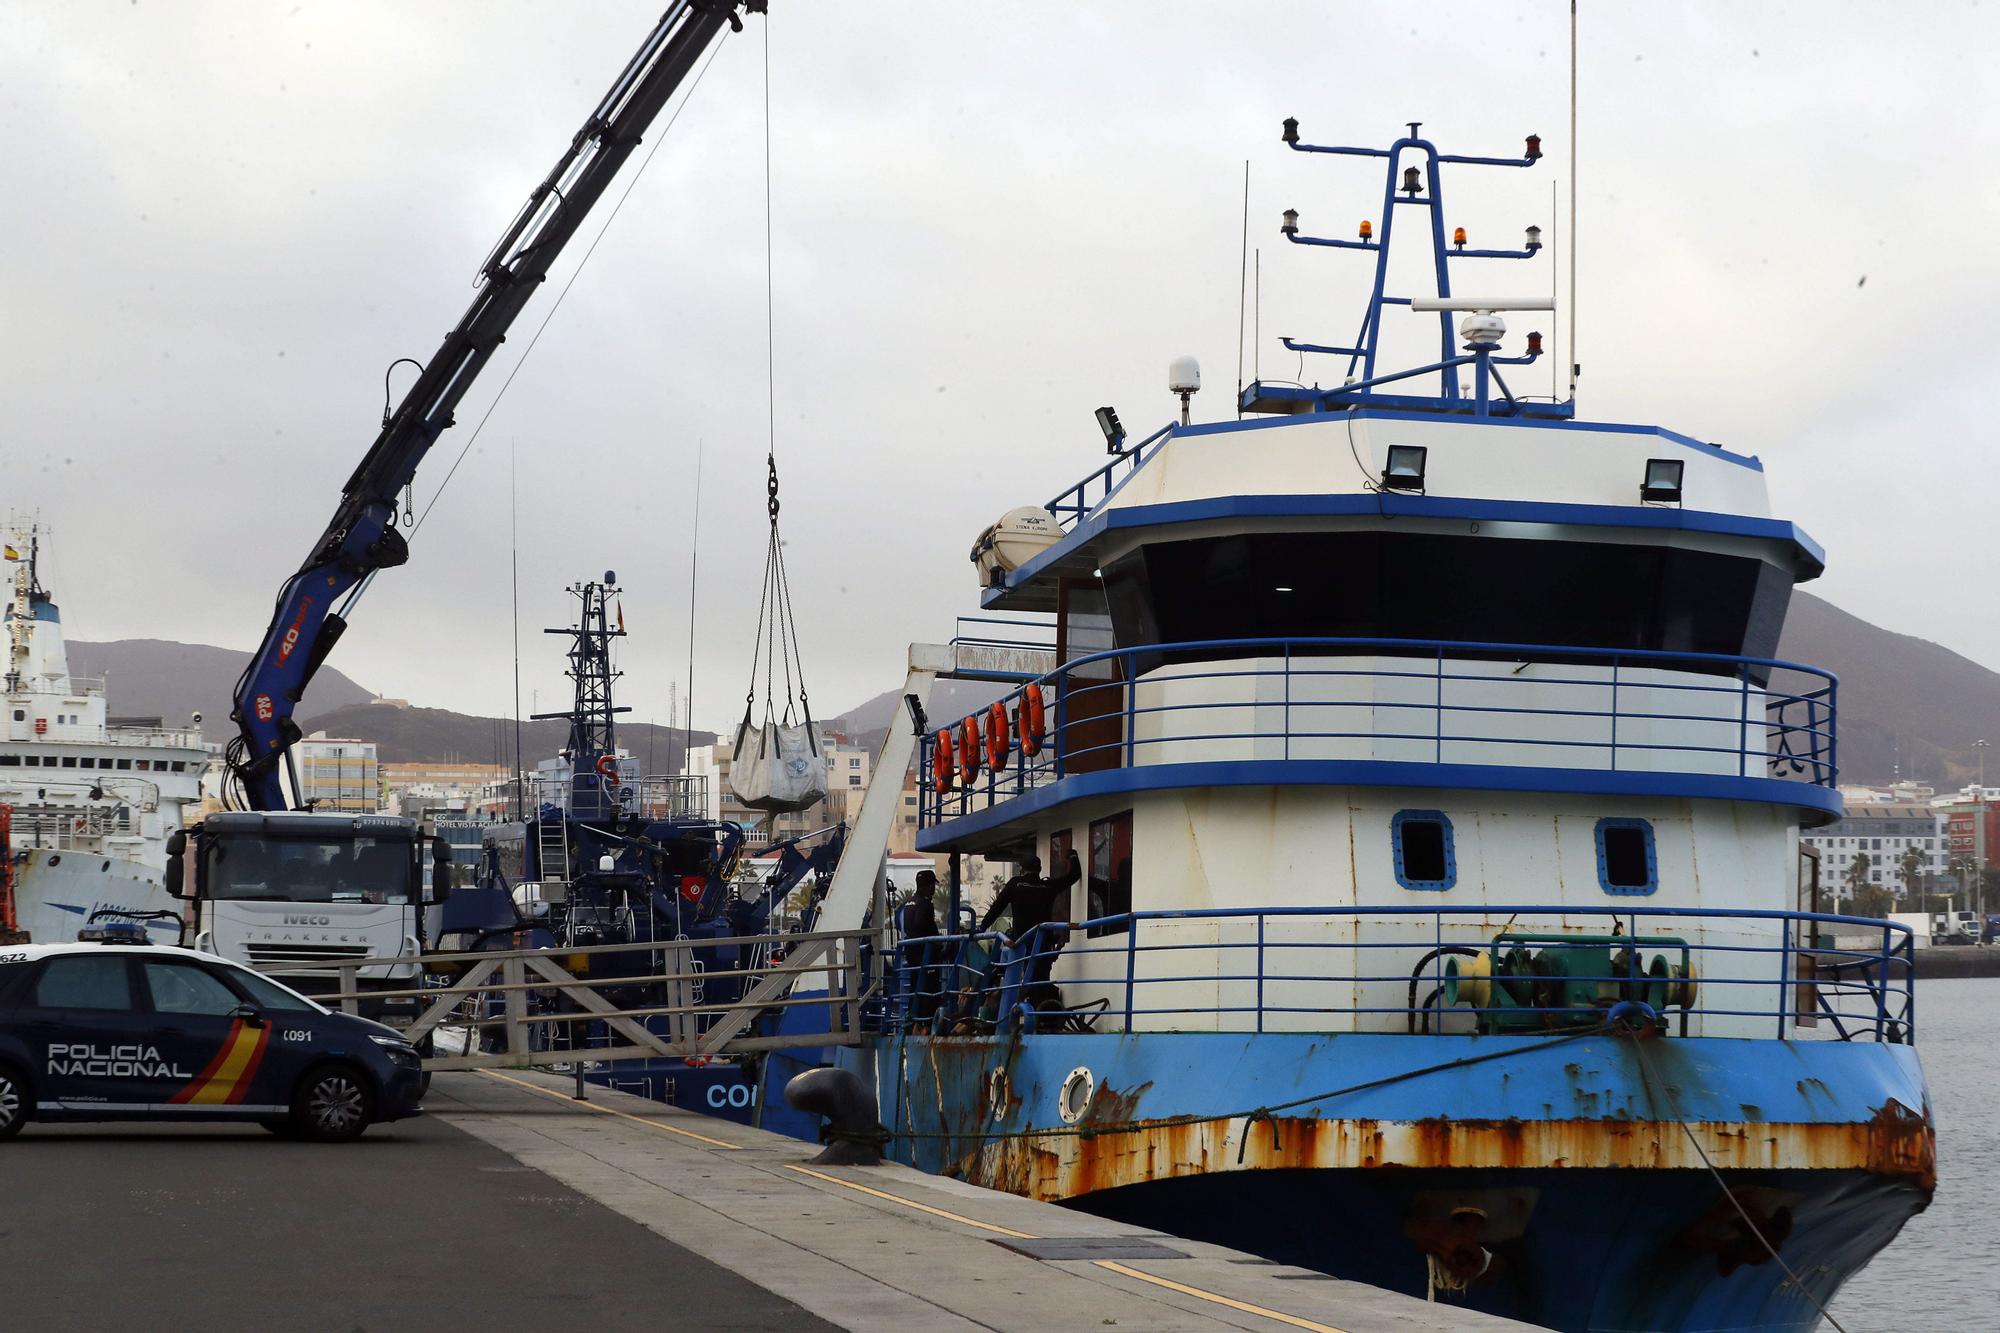 Interceptan un pesquero con 2.000 kilos de cocaína al Sur de Canarias